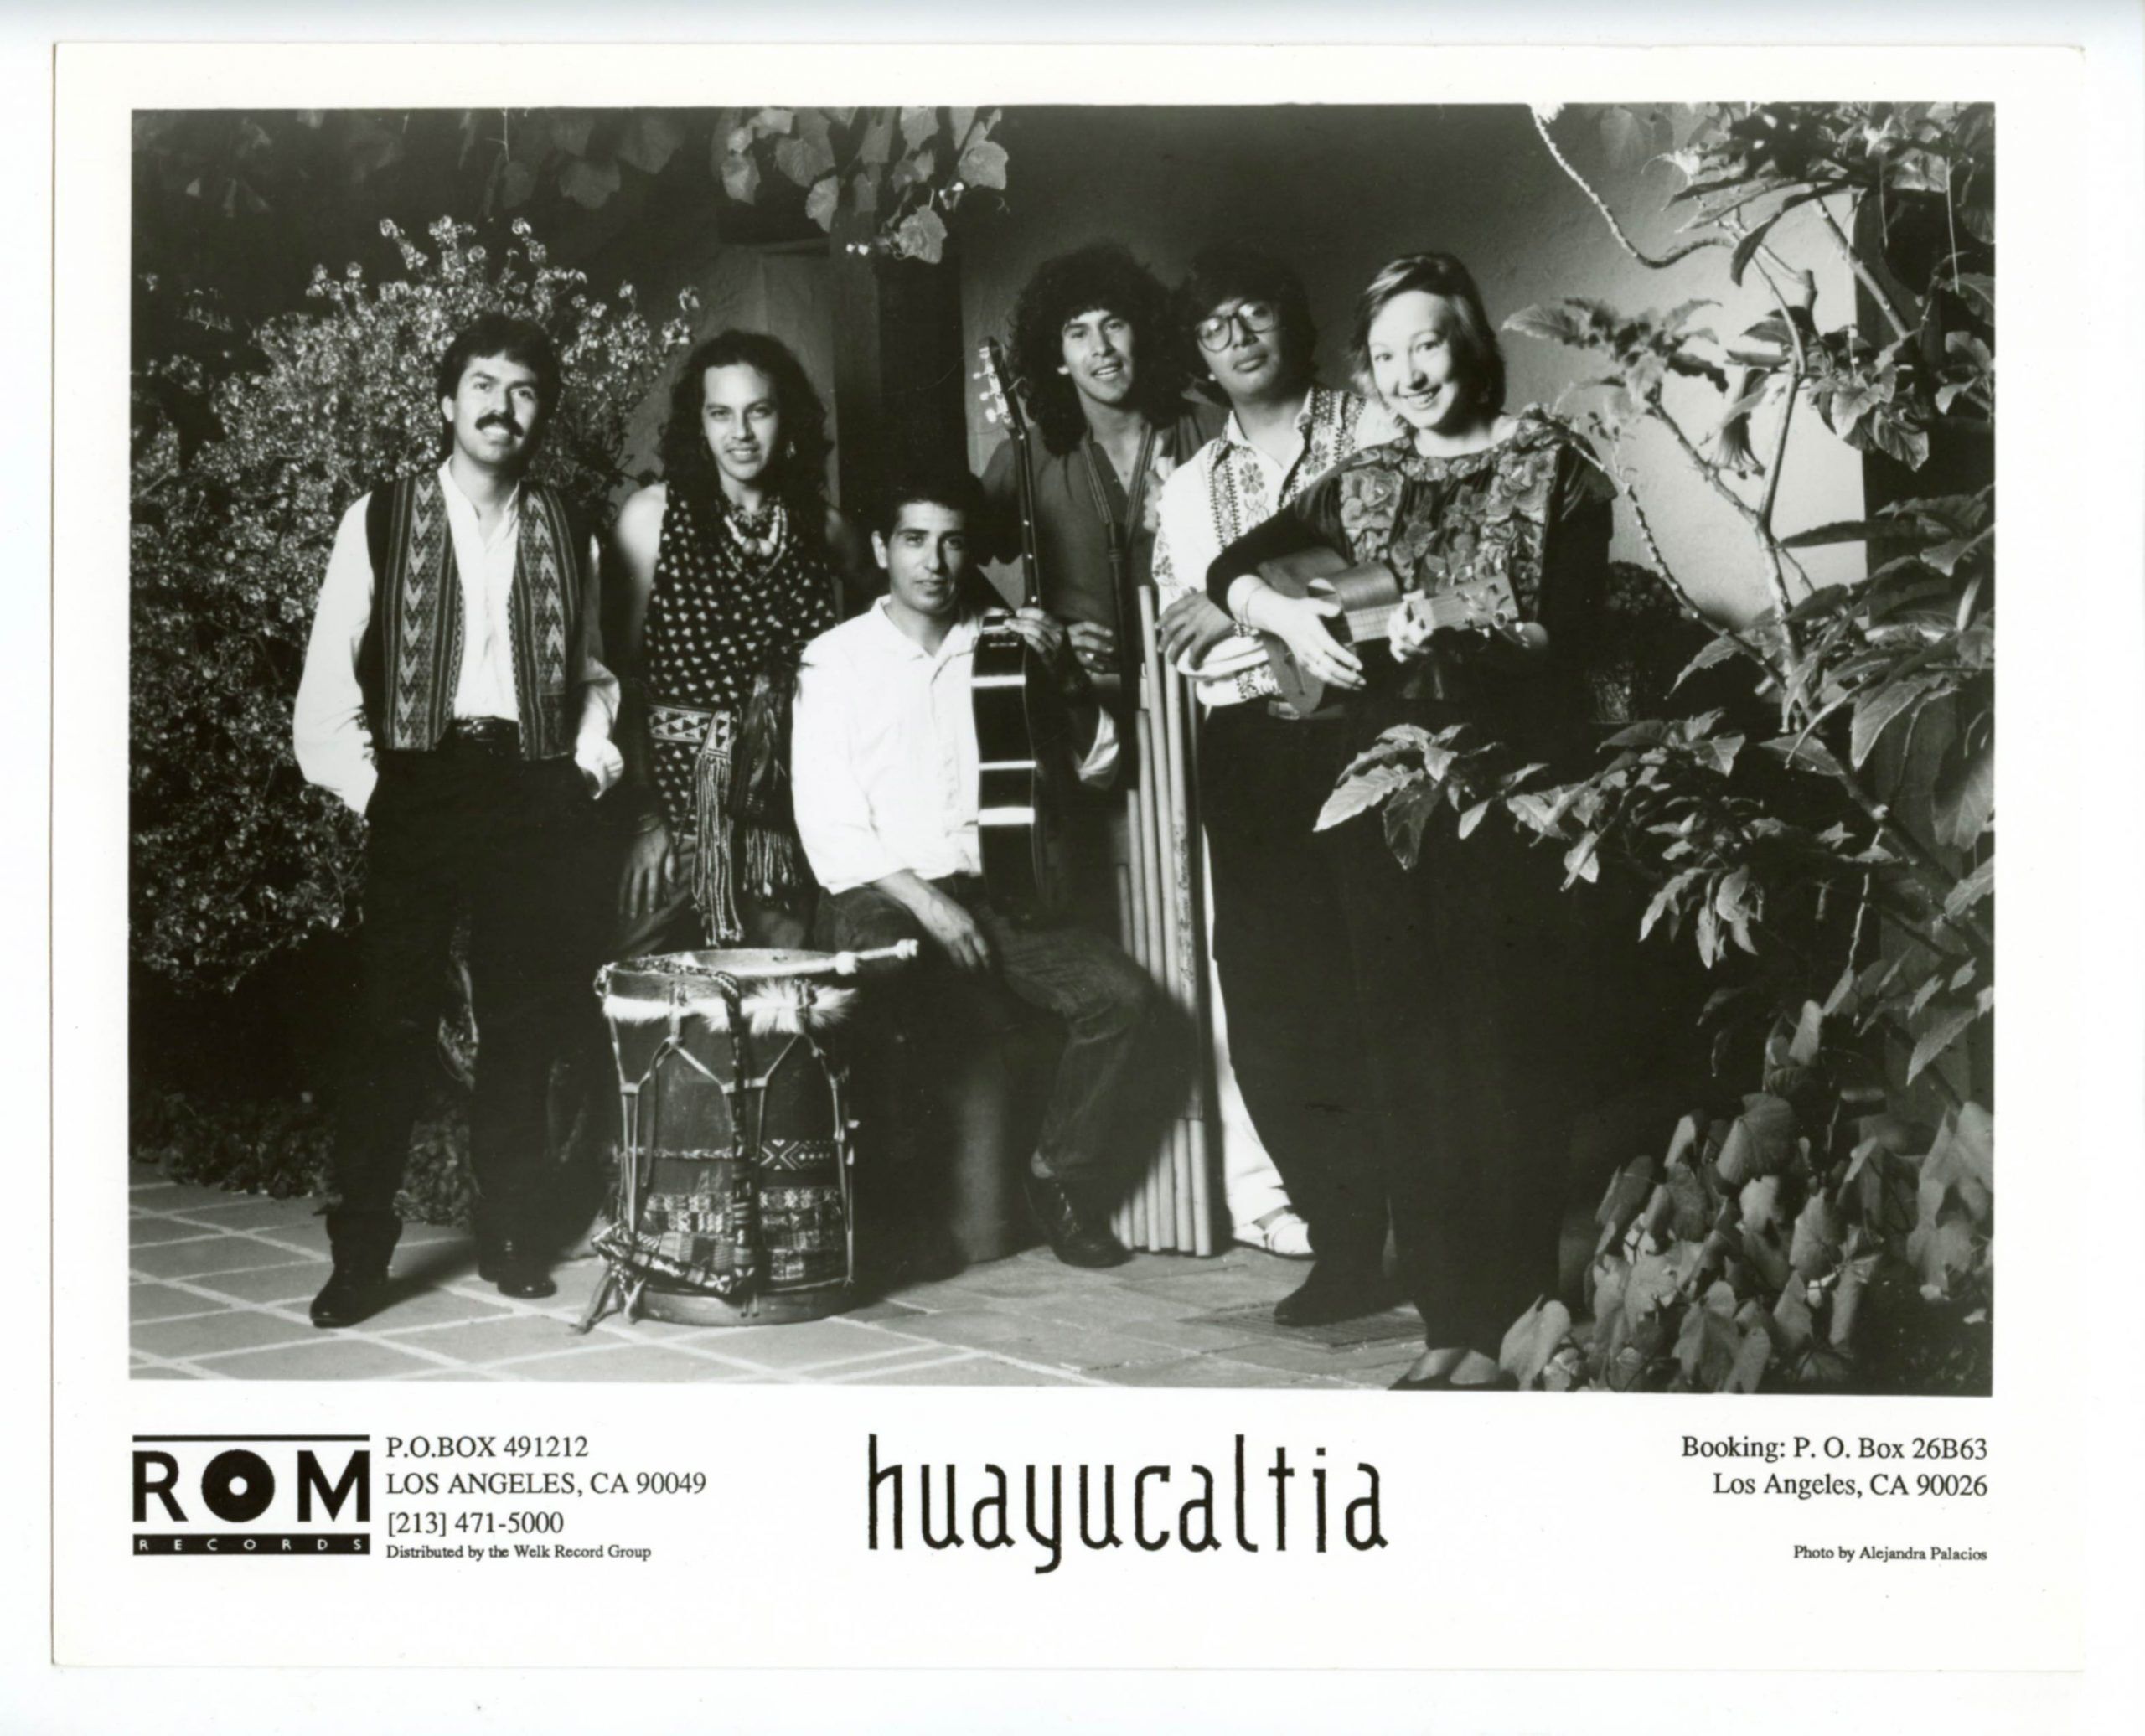 Huayucaltia Photo 1980s Rom Records